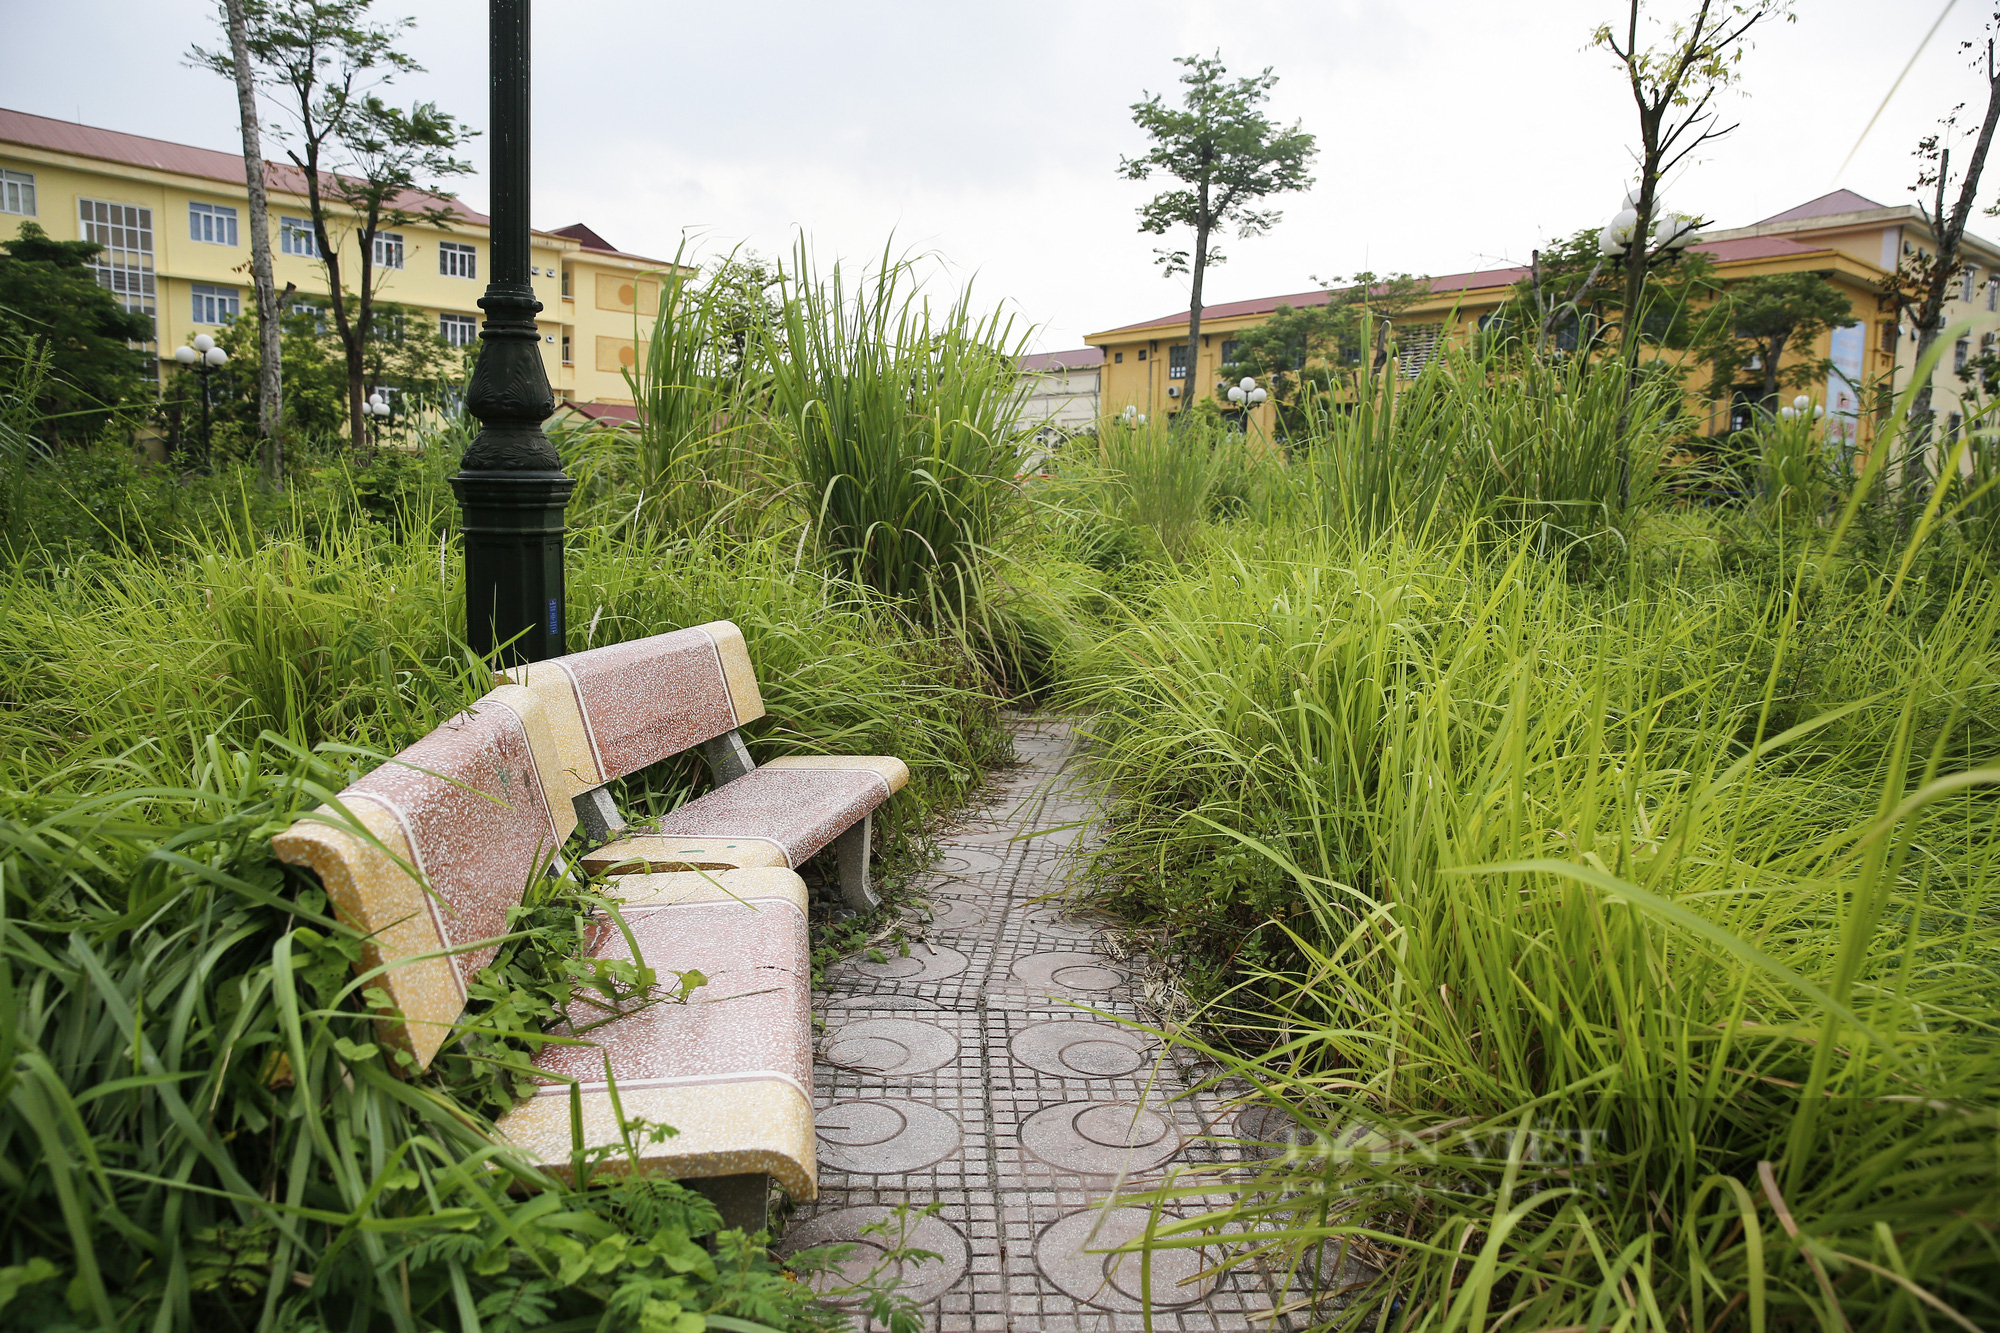 Hà Nội: Cây chết khô, ghế gãy, cỏ mọc um tùm tại công viên phường Trần Phú - Ảnh 2.